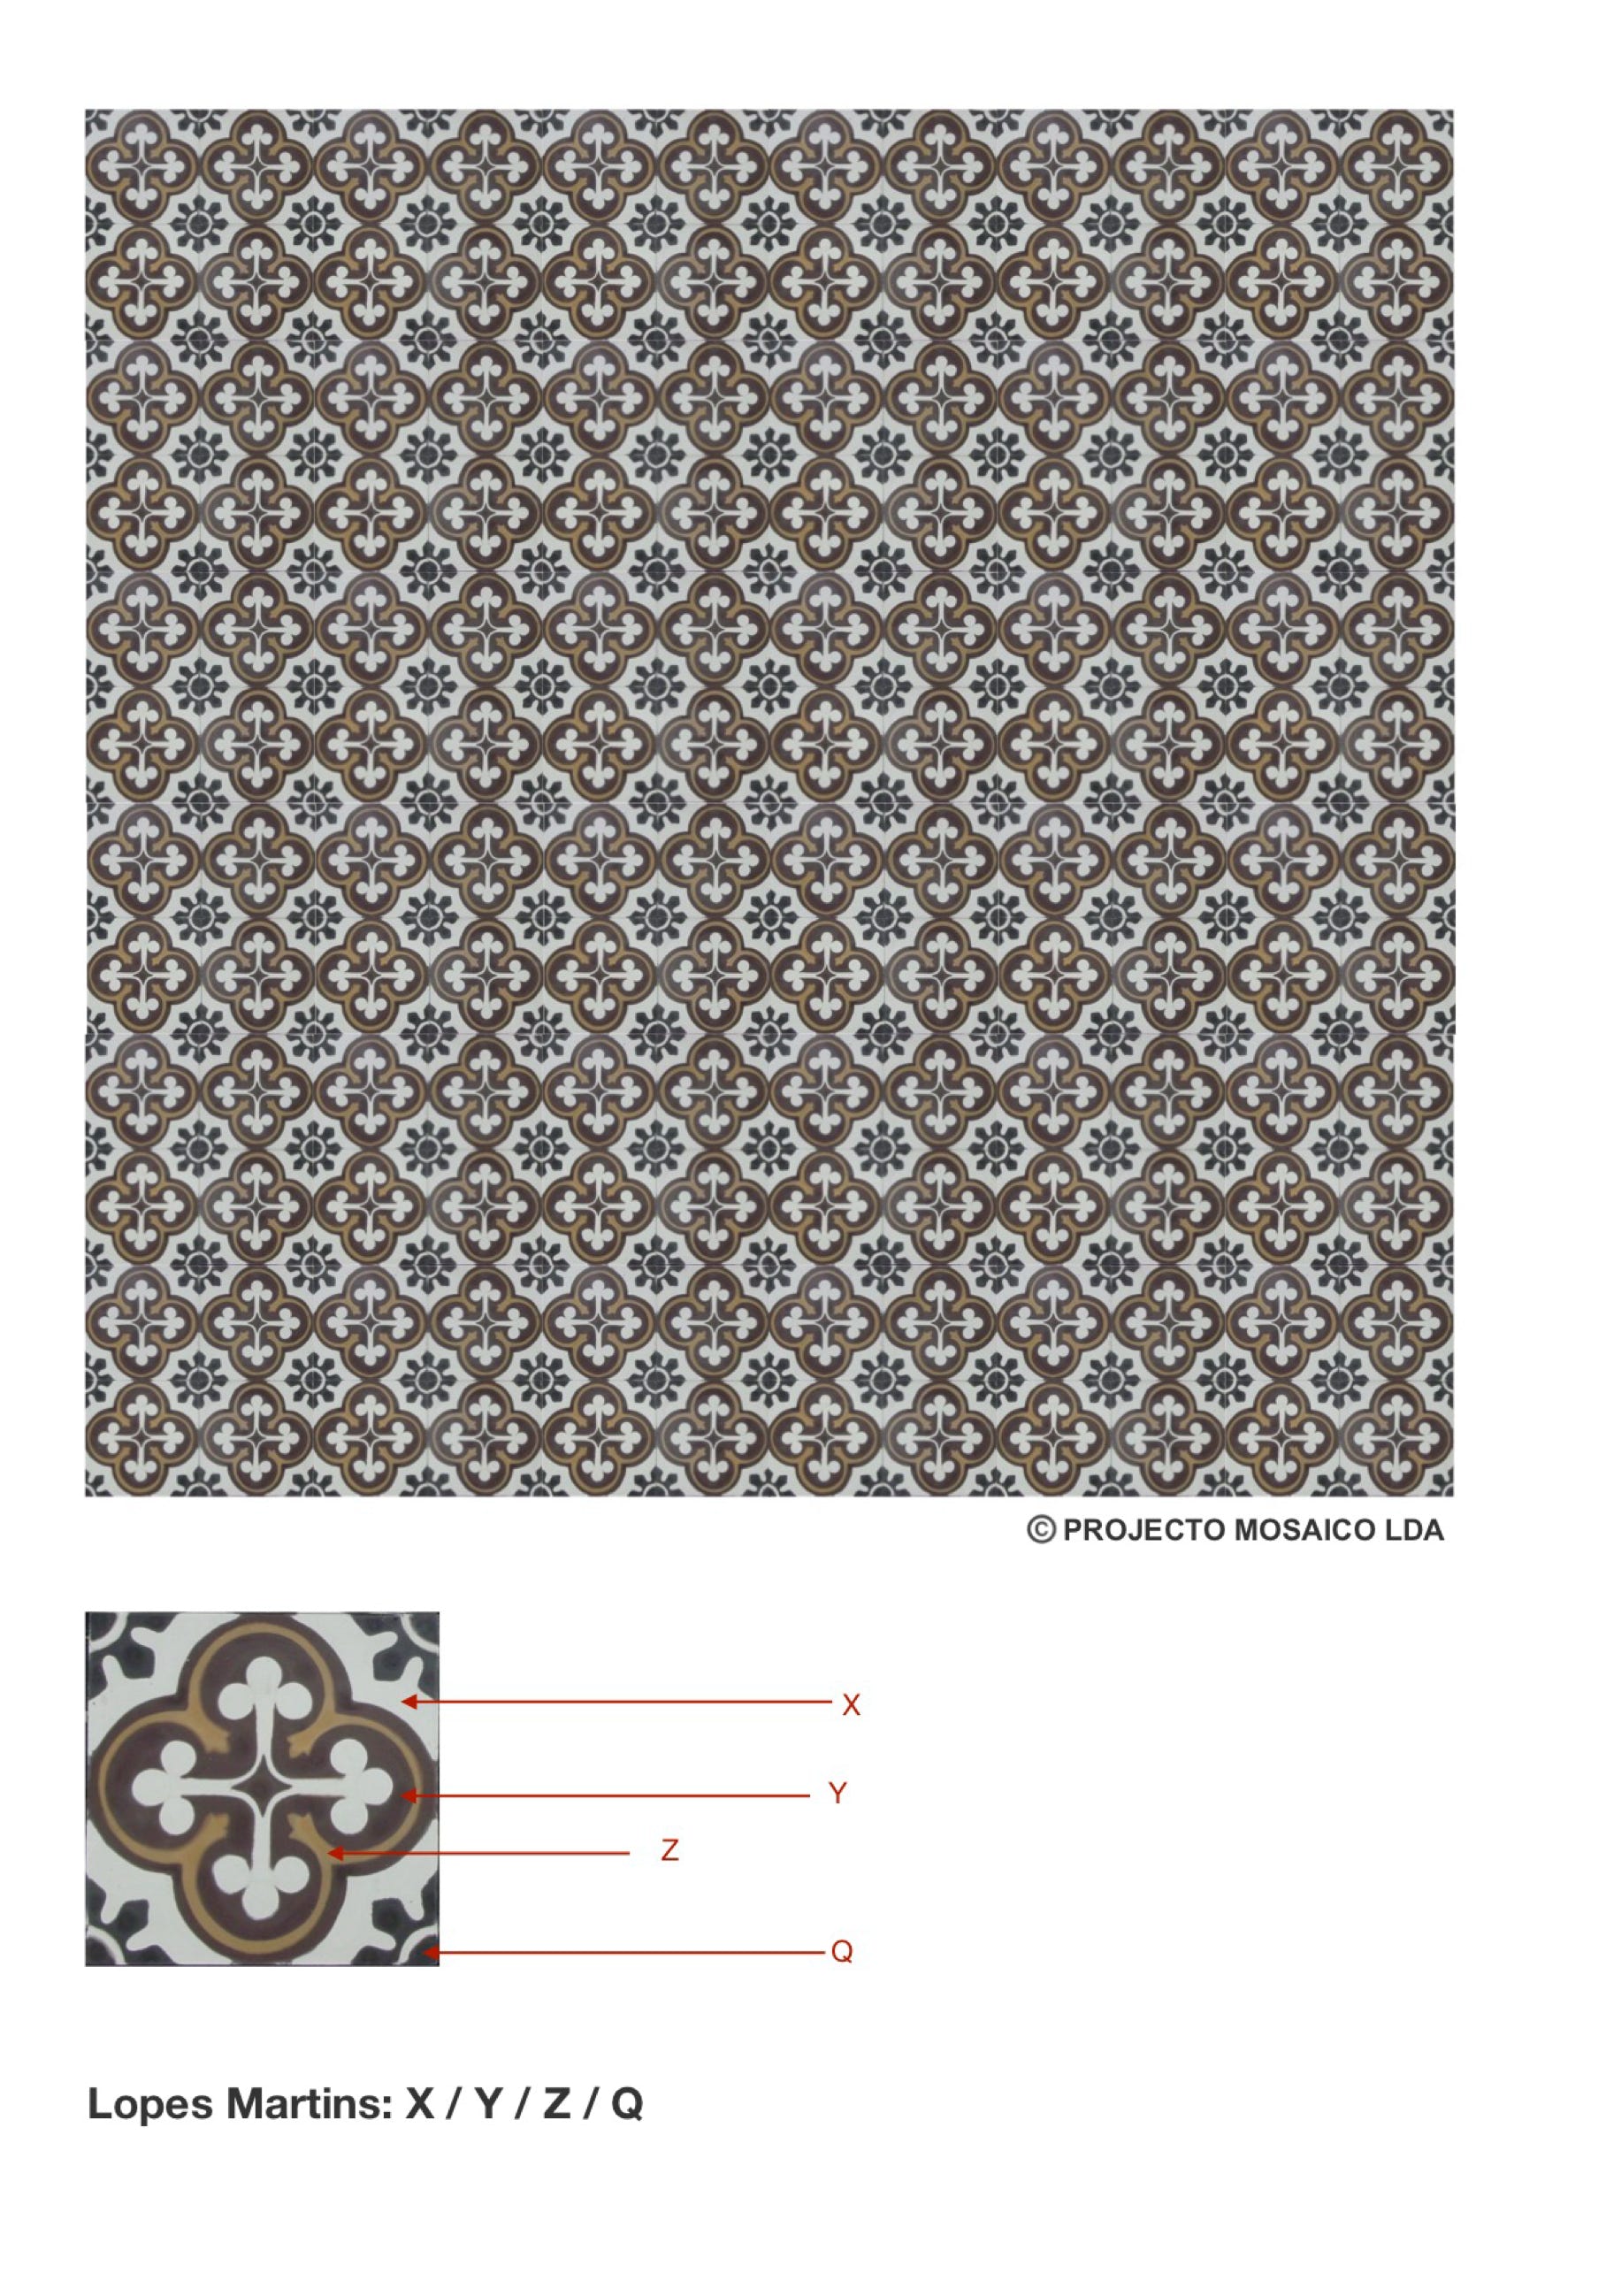 illustração de aplicação do mosaico hidráulico ref: Lopes Martins